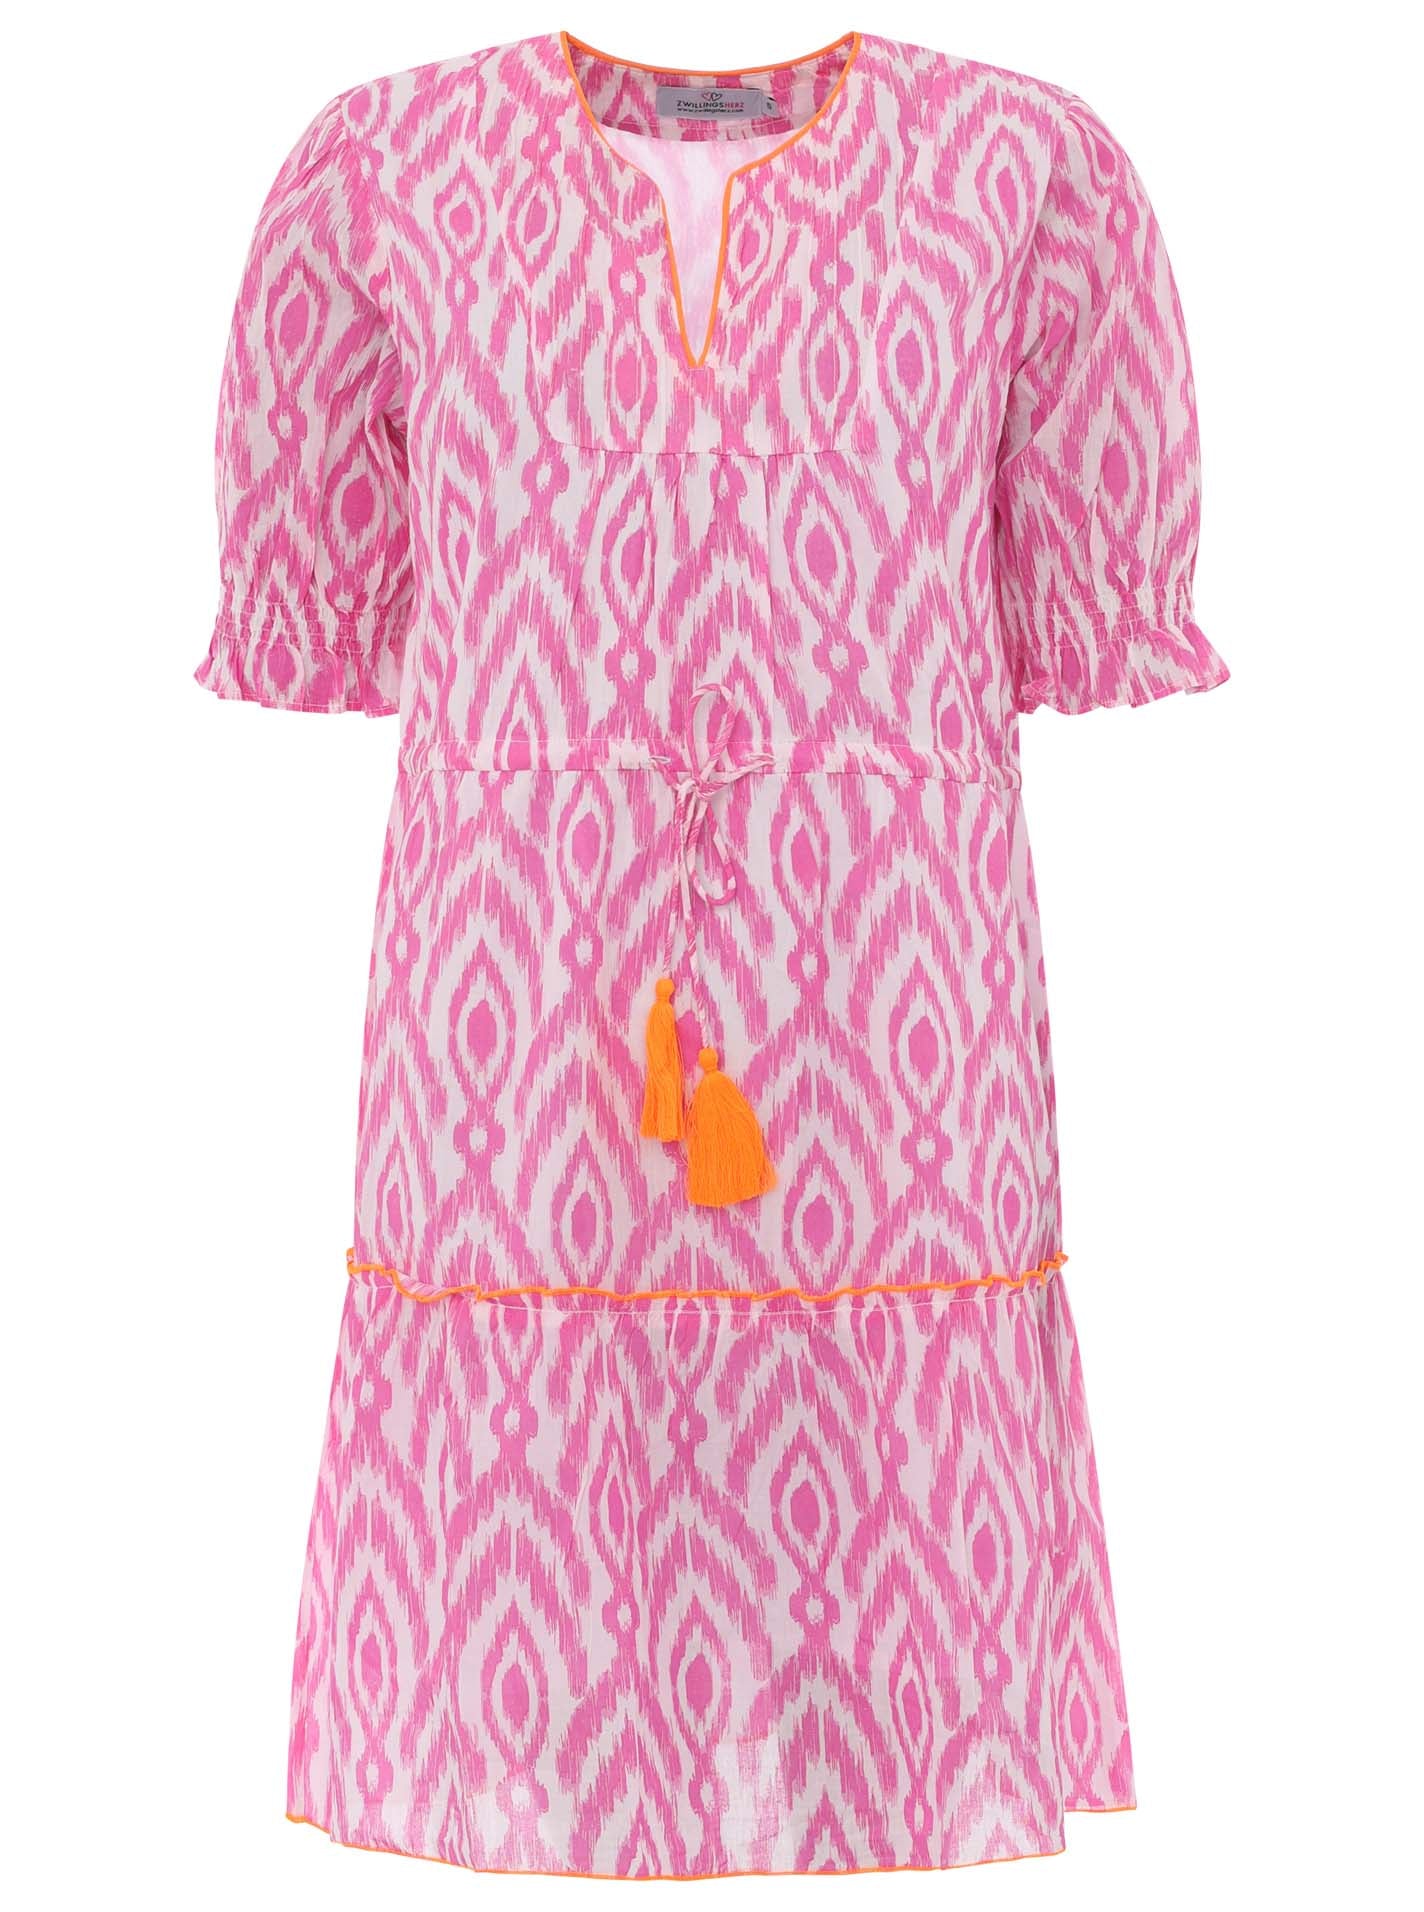 Zwillingsherz - Baumwolle Kleid mit Design- Pink/Weiß